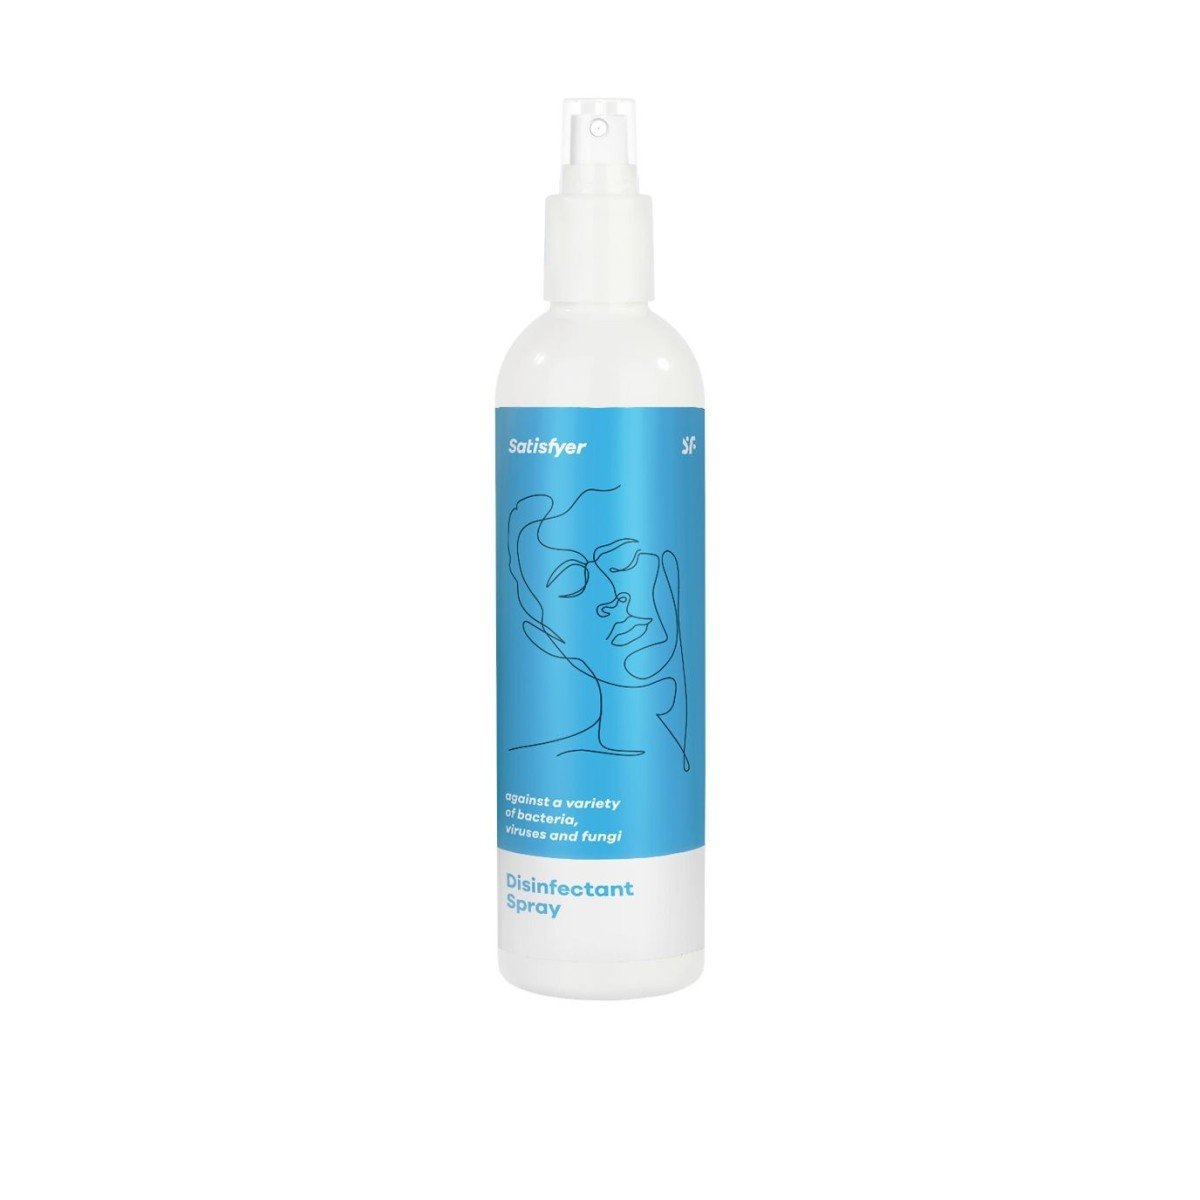 Satisfyer Men Disinfectant Spray 300 ml, čistící a dezinfekční sprej na erotické pomůcky